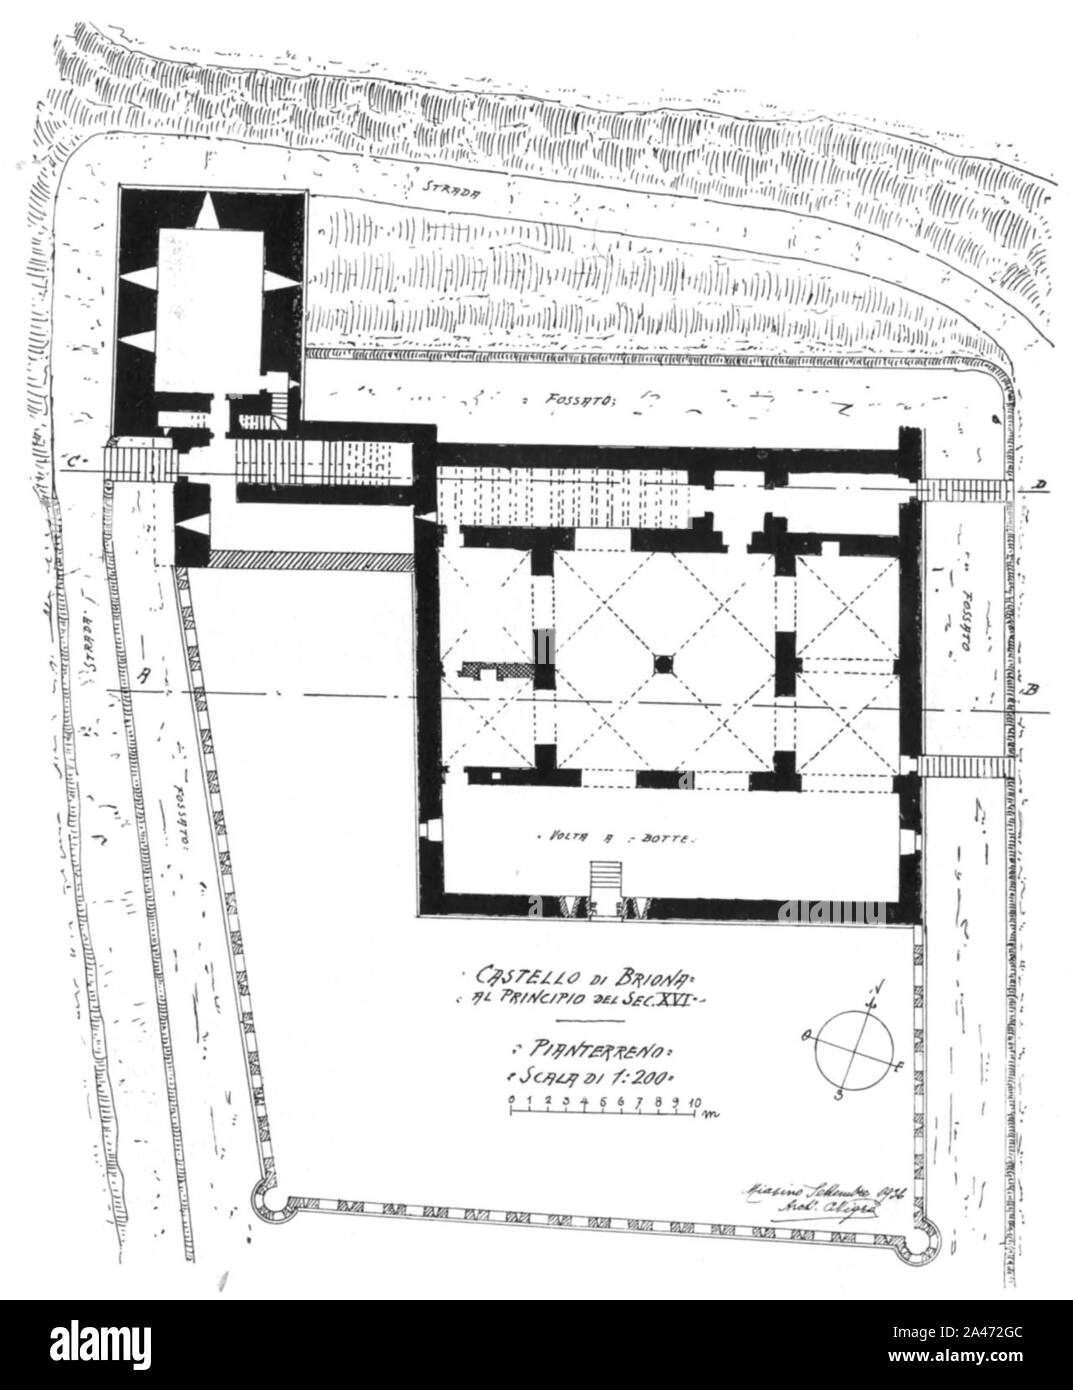 Abb. 94, Castello di Briona, al Guenther del sec XVI, pianta Pianterreno, p188, dis nigra, Sett 1936, nigra il Novarese. Stockfoto